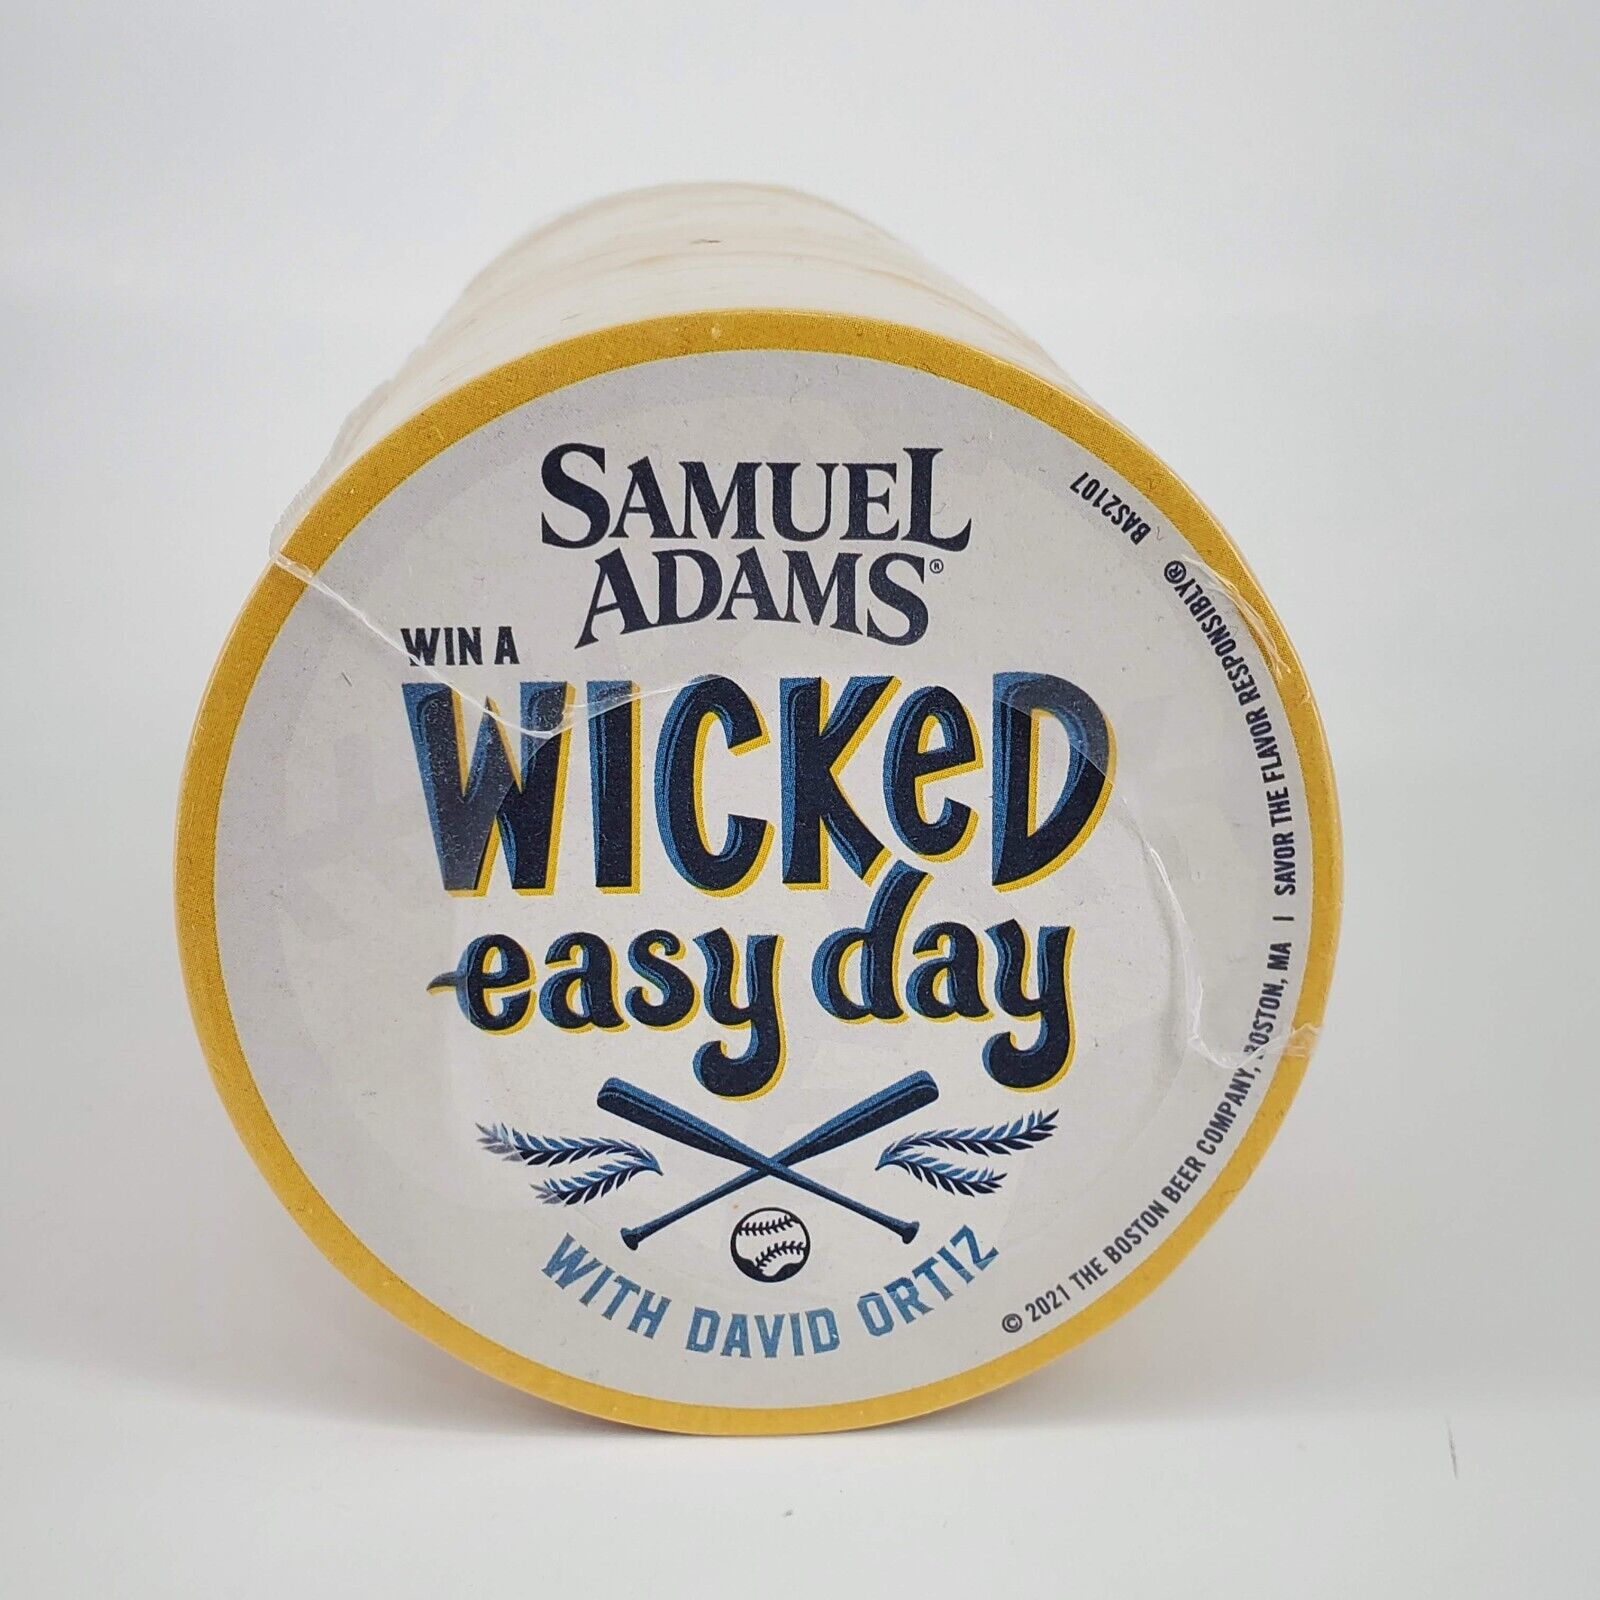 Samuel Adams Wicked easy day David Ortiz 100 Beer Coasters Sealed Sleeve 2021